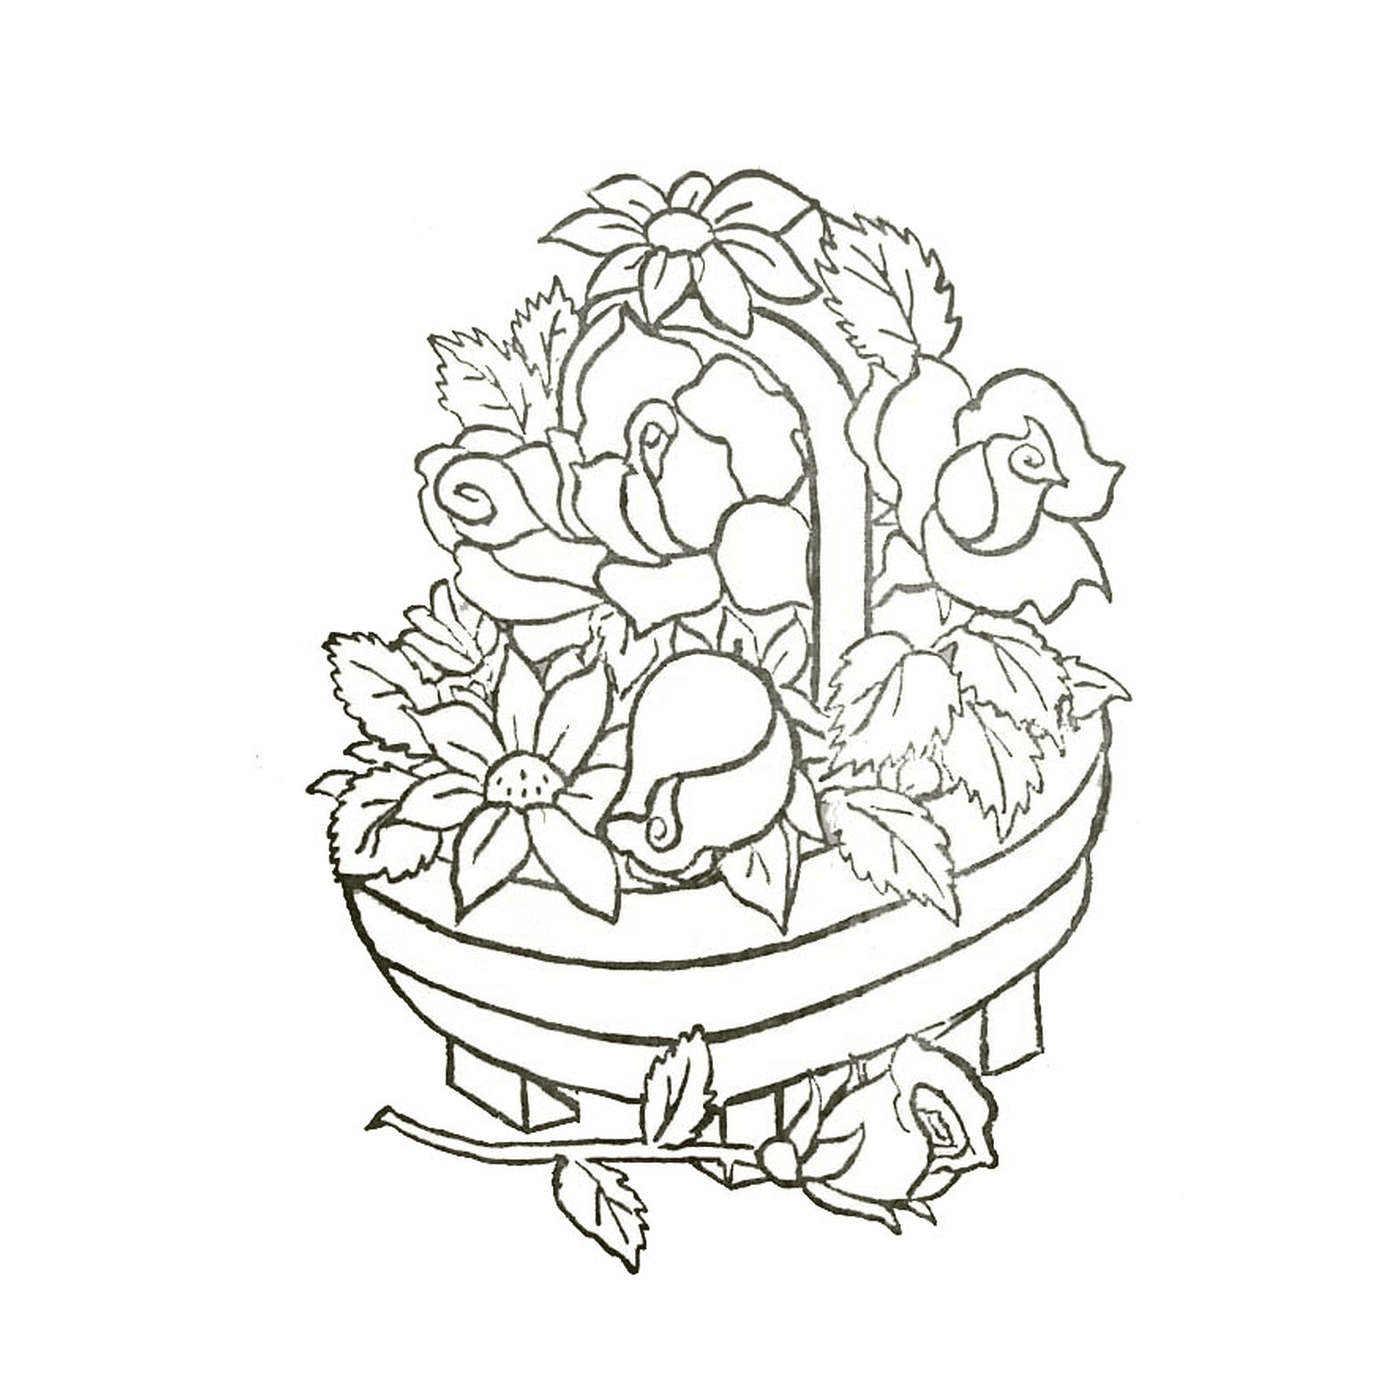  Una cesta llena de flores 